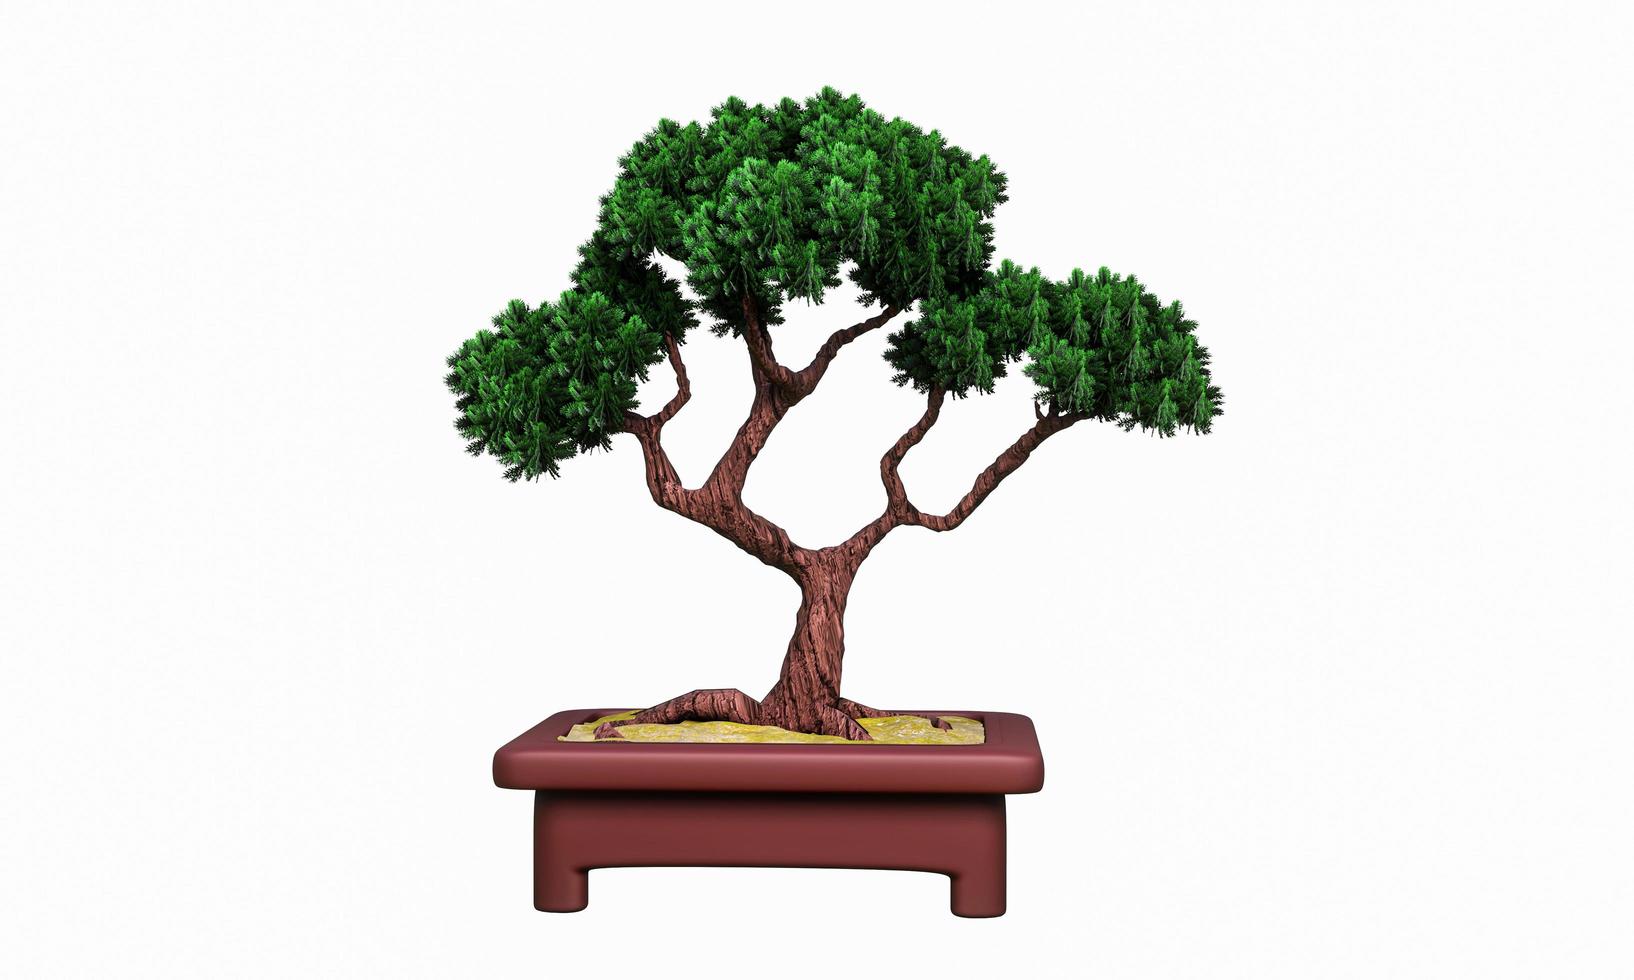 plantas en macetas pequeñas o bonsai. macetas de terracota y plantas permanentes. pino curvo en una maceta pequeña. representación 3d foto